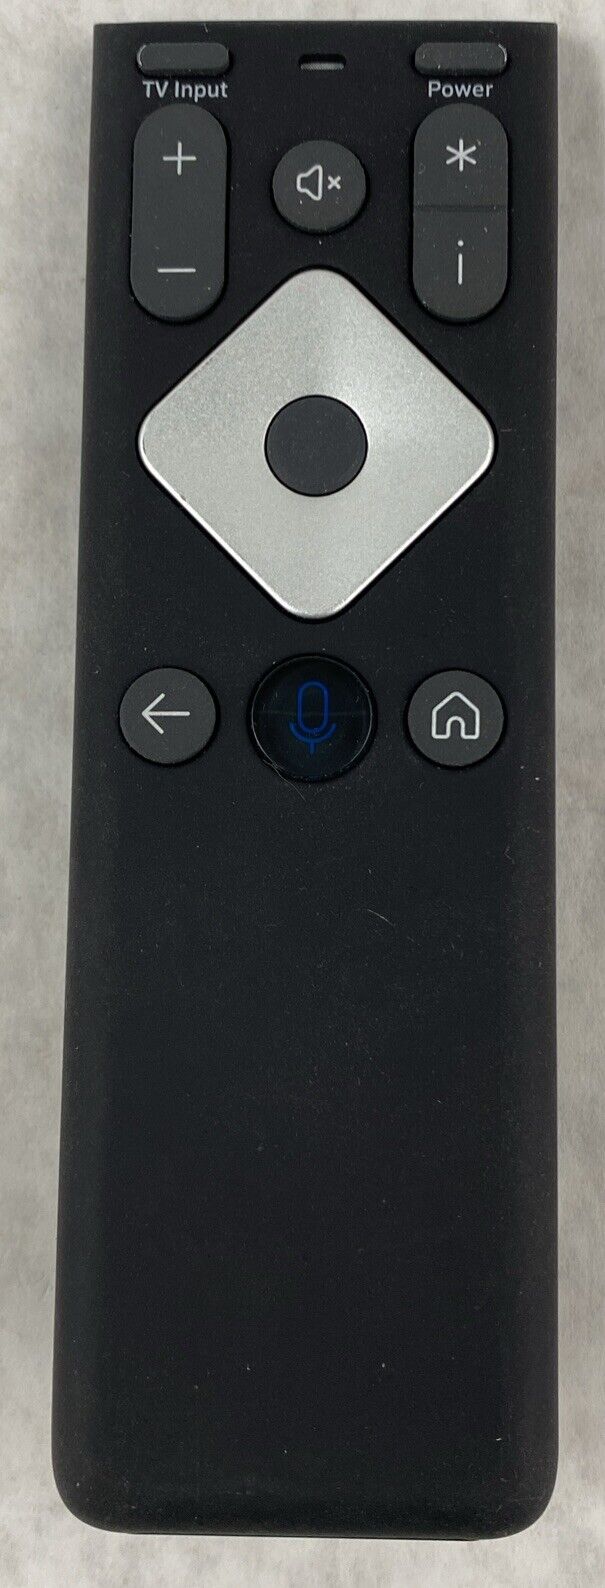 Lot( 2 ) Xfinity XR16 Comcast Remote Control R34353B for Flex Streaming Box